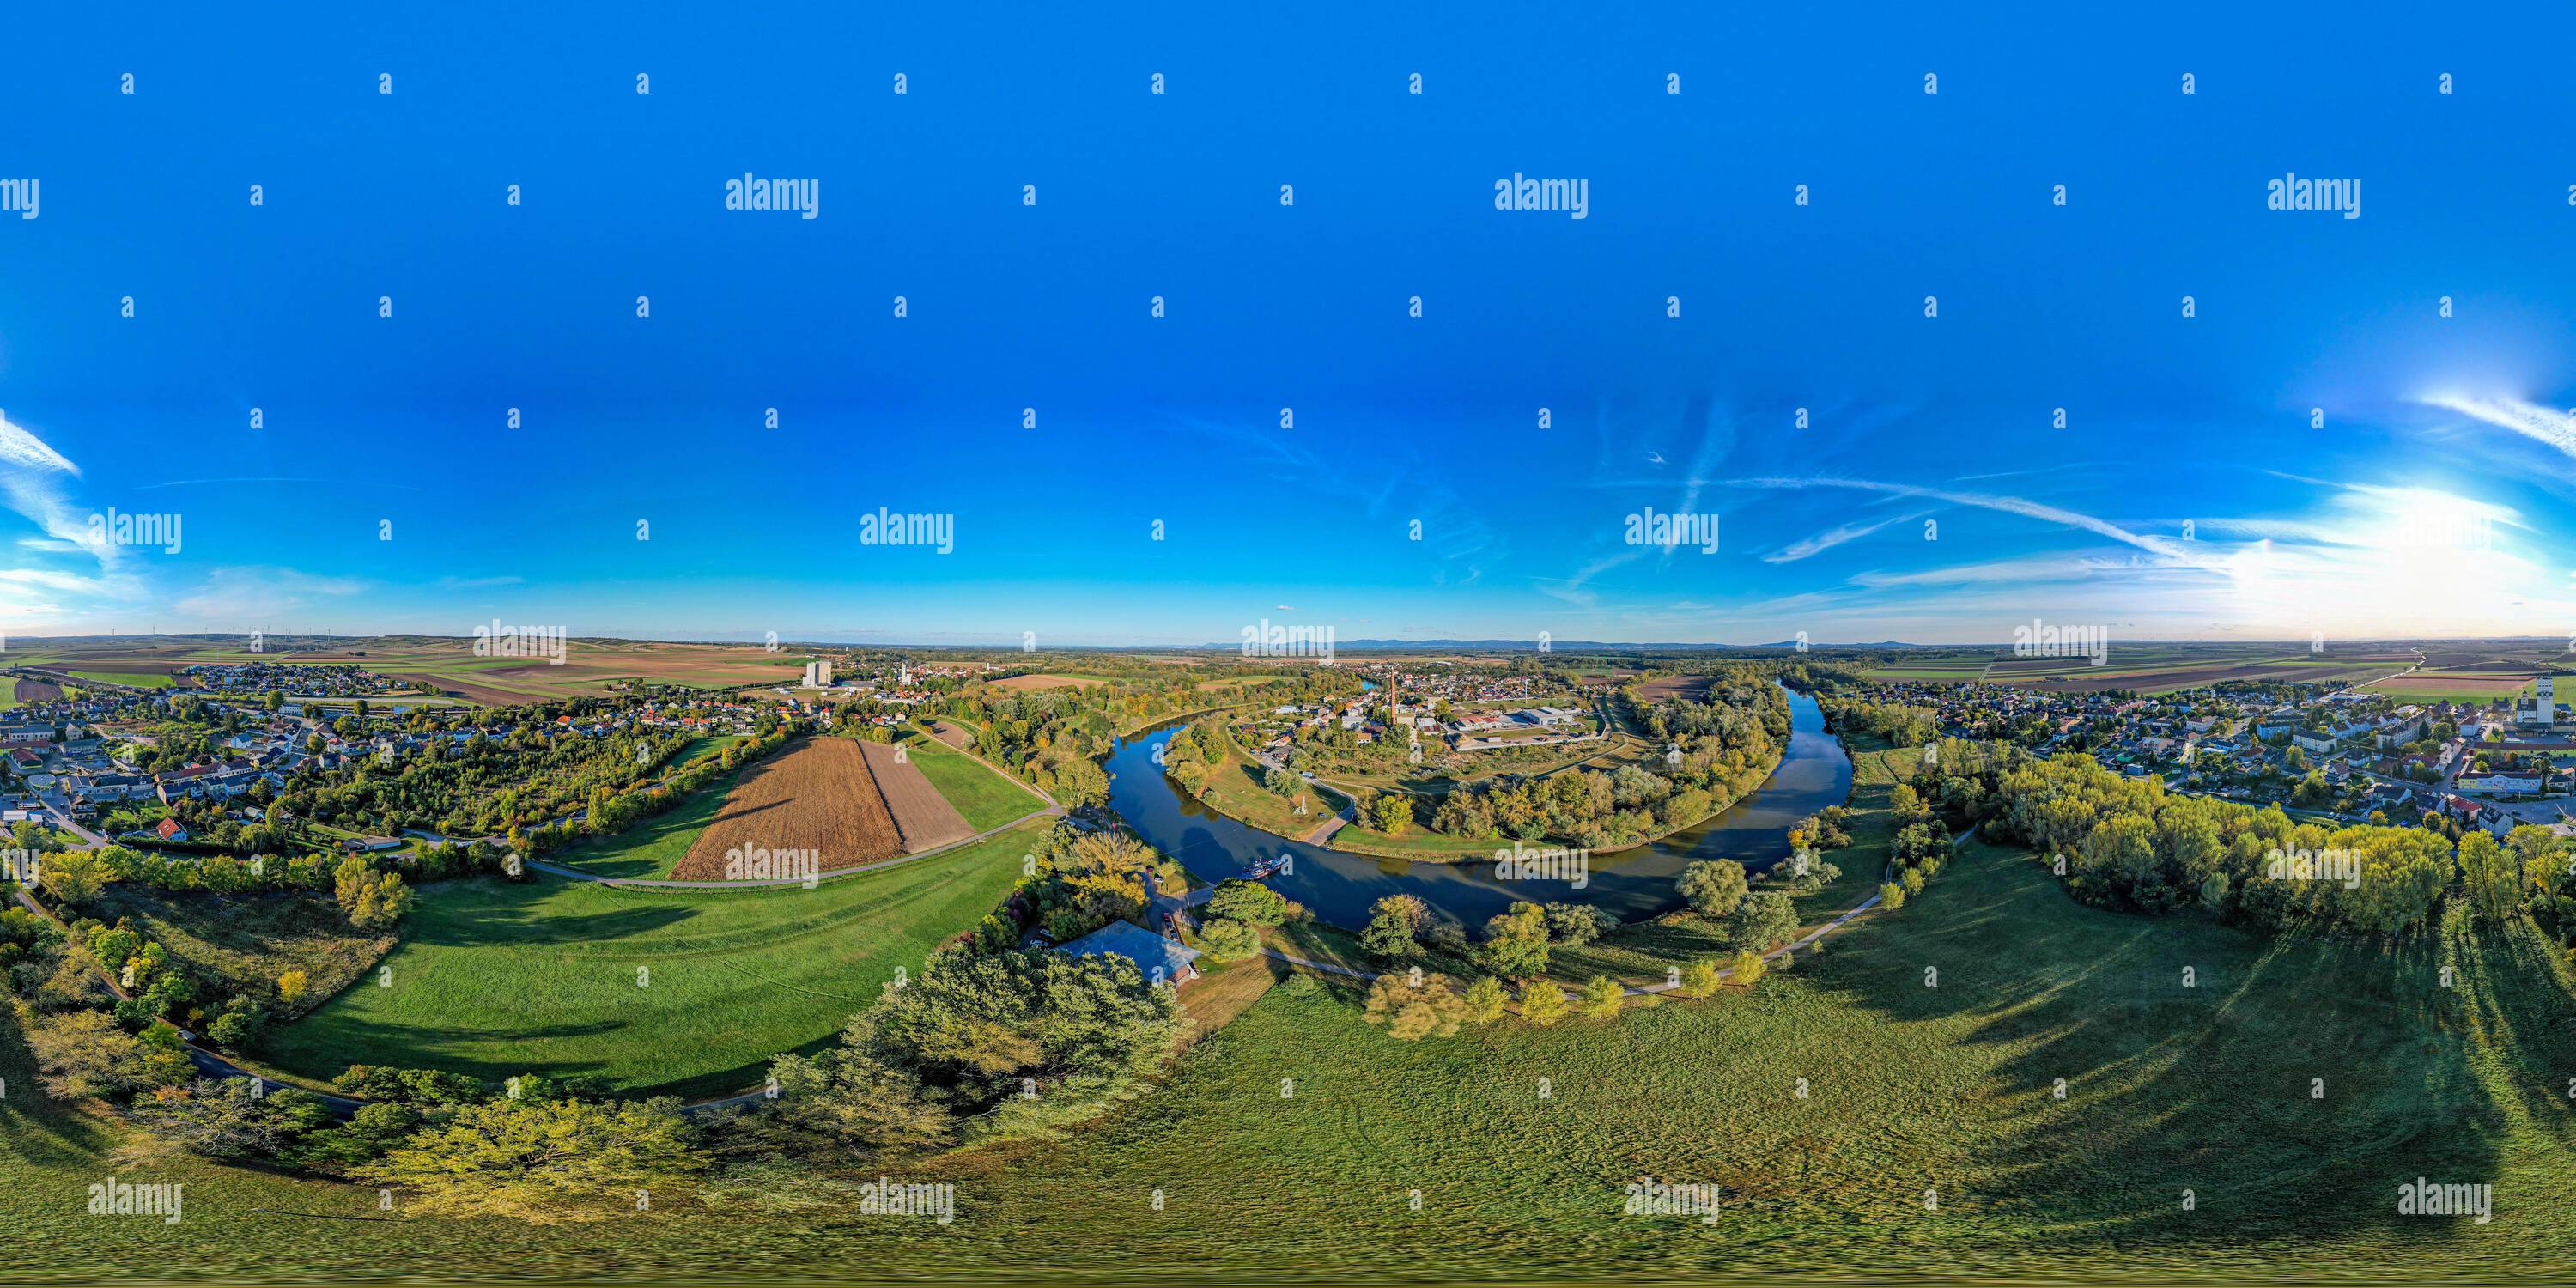 Visualizzazione panoramica a 360 gradi di Angern an der March Niederösterreich Bezirk Gänserndorf 360 Grad Fähre